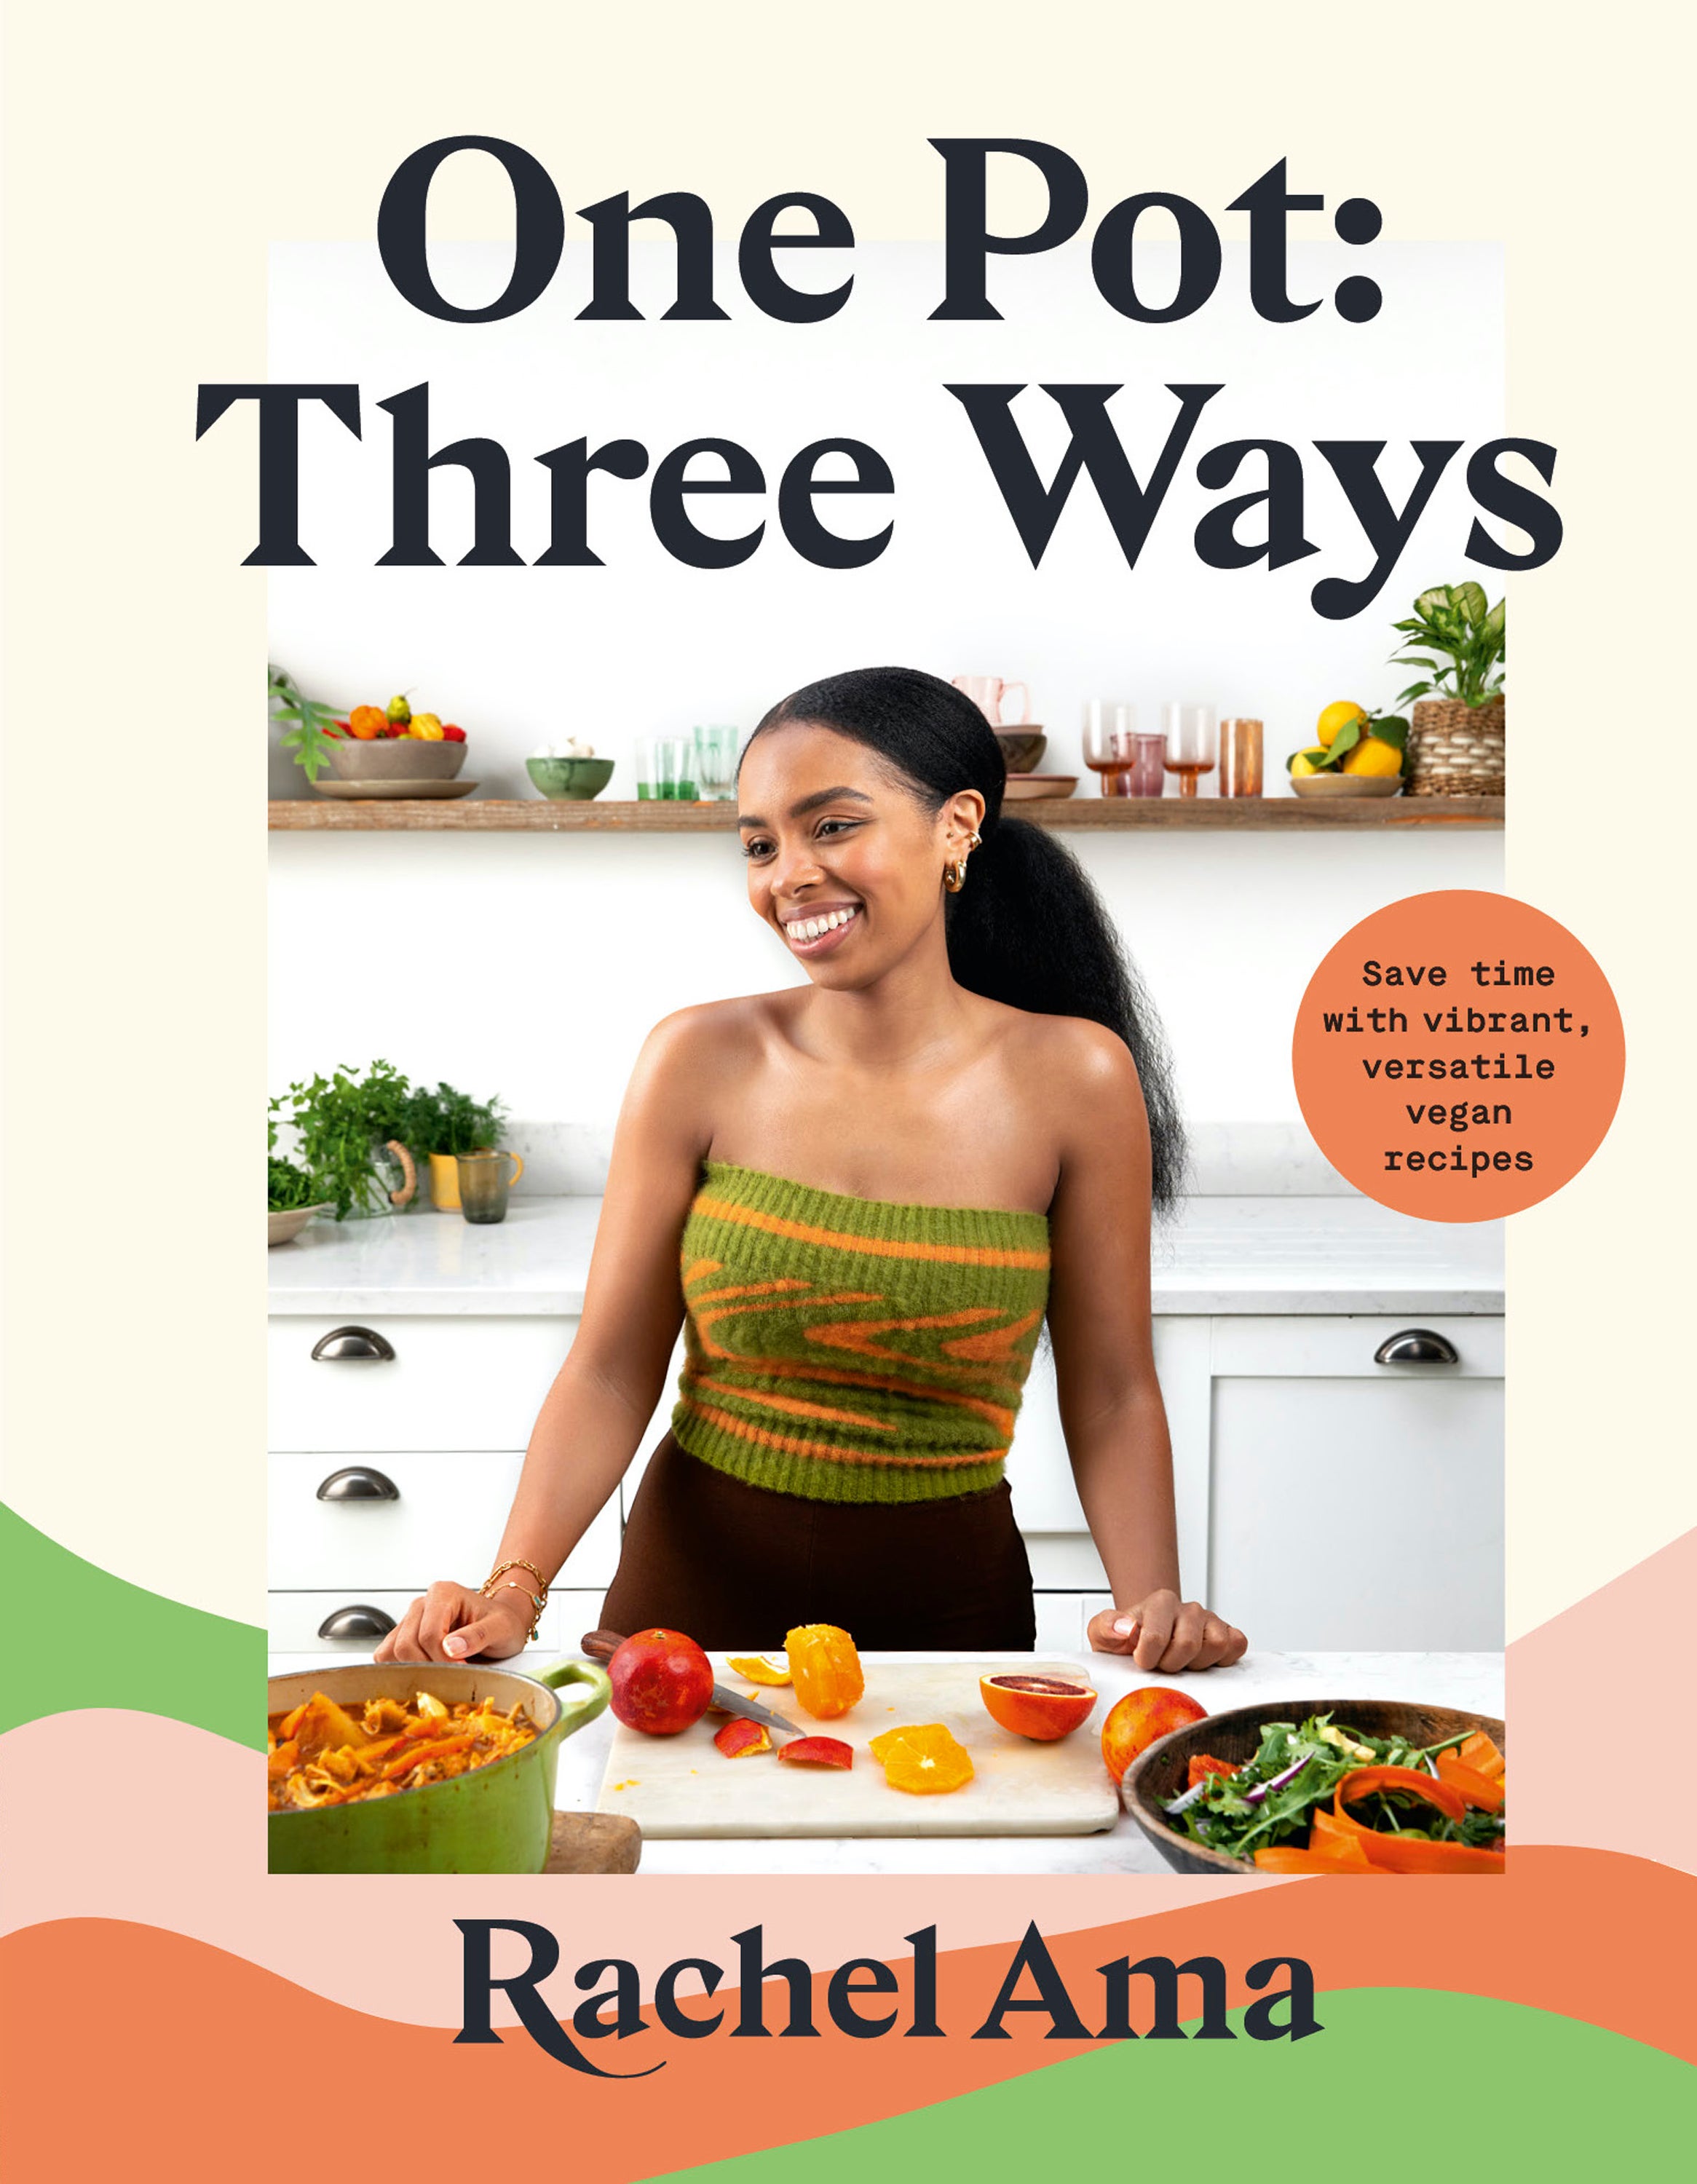 One Pot: Three Ways by Rachel Ama